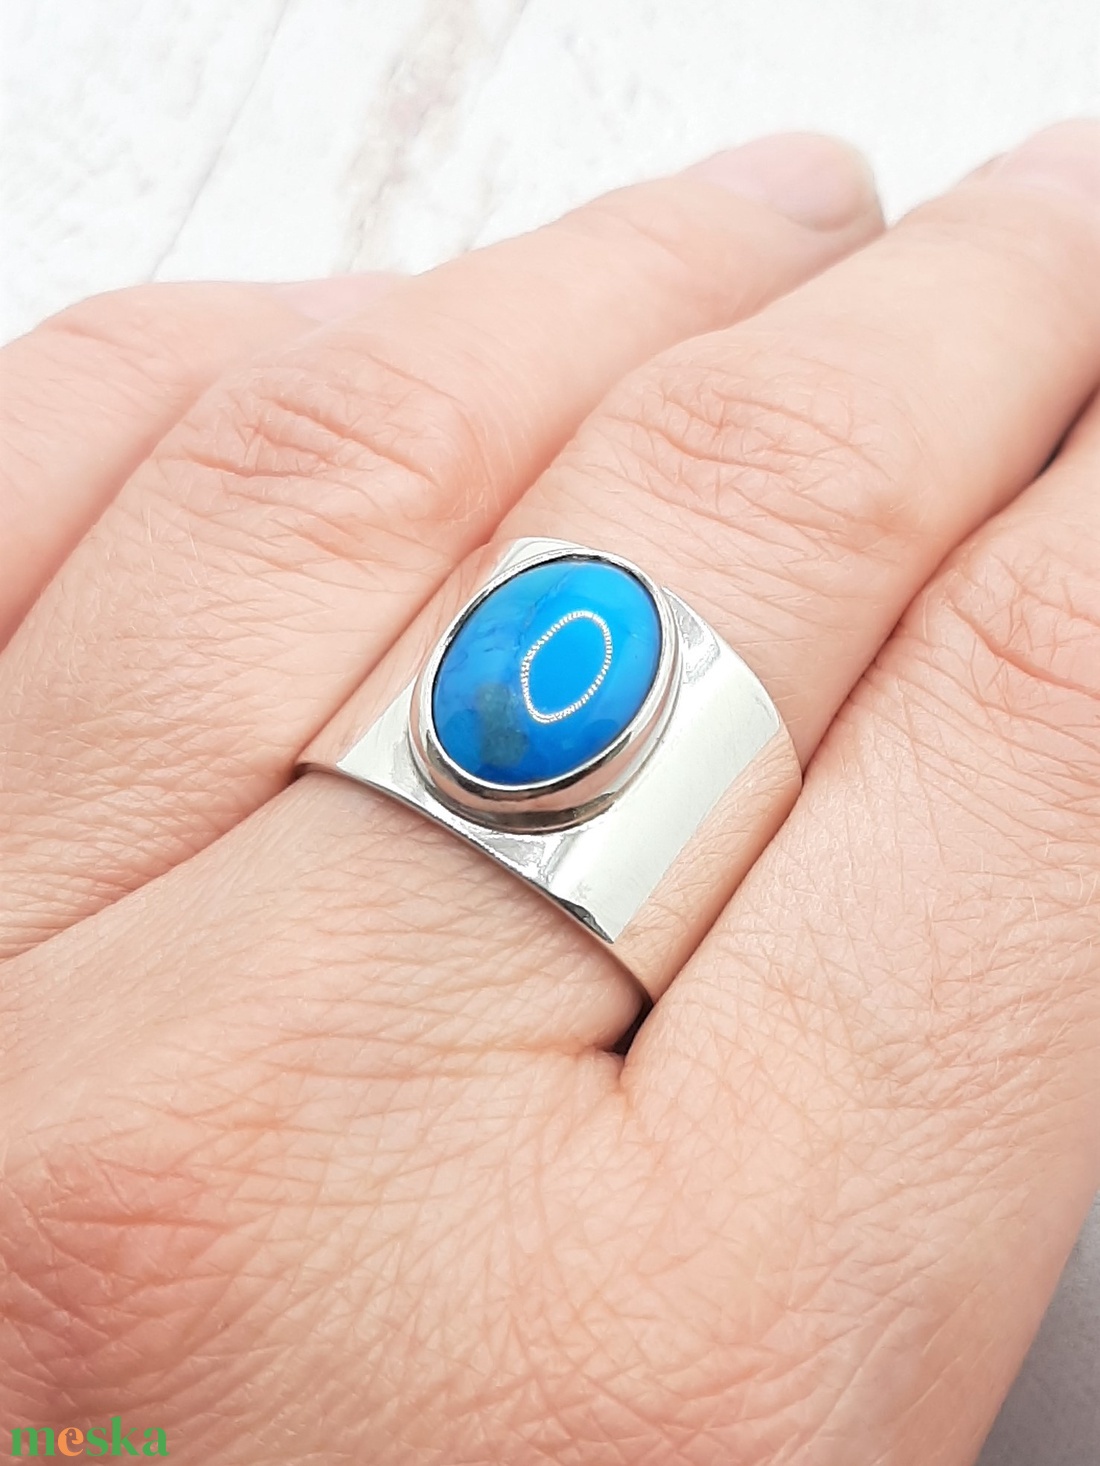 Türkiz ezüst gyűrű  - ékszer - gyűrű - statement gyűrű - Meska.hu